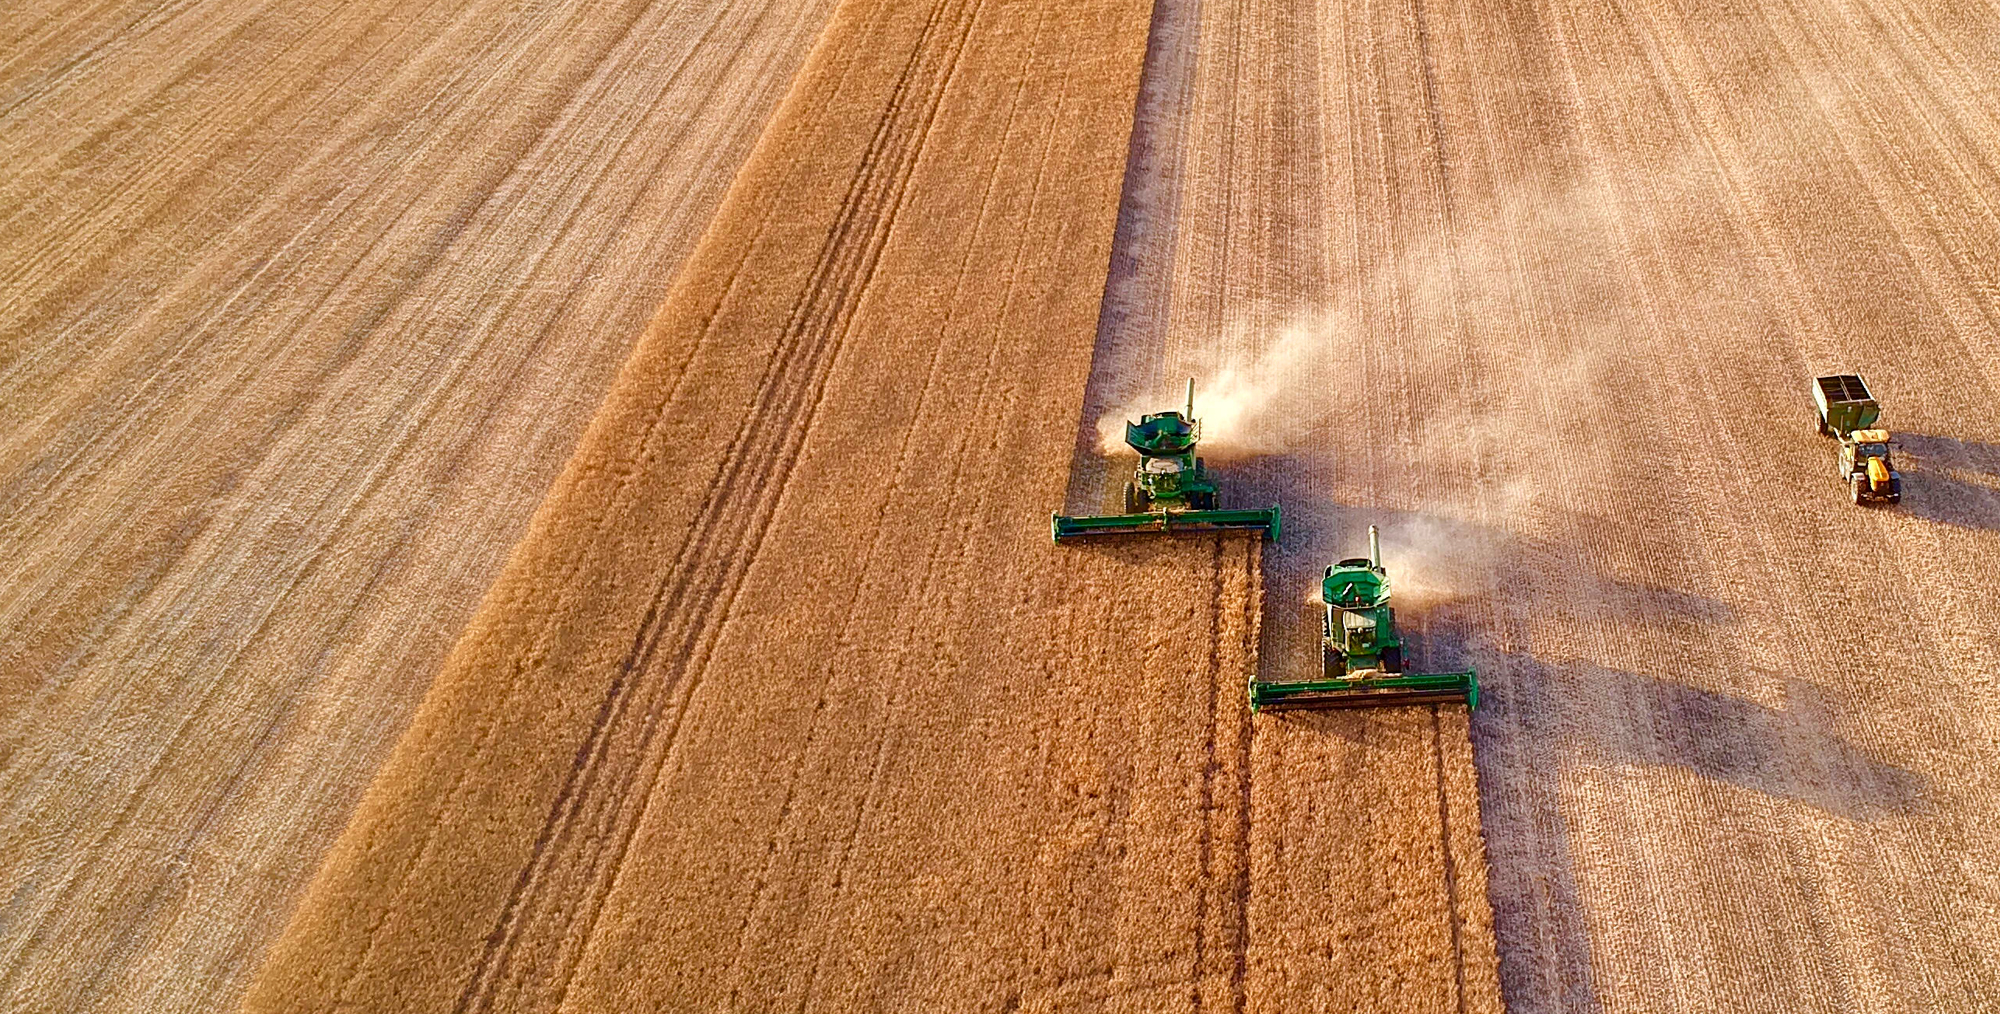 Harvest on the farm